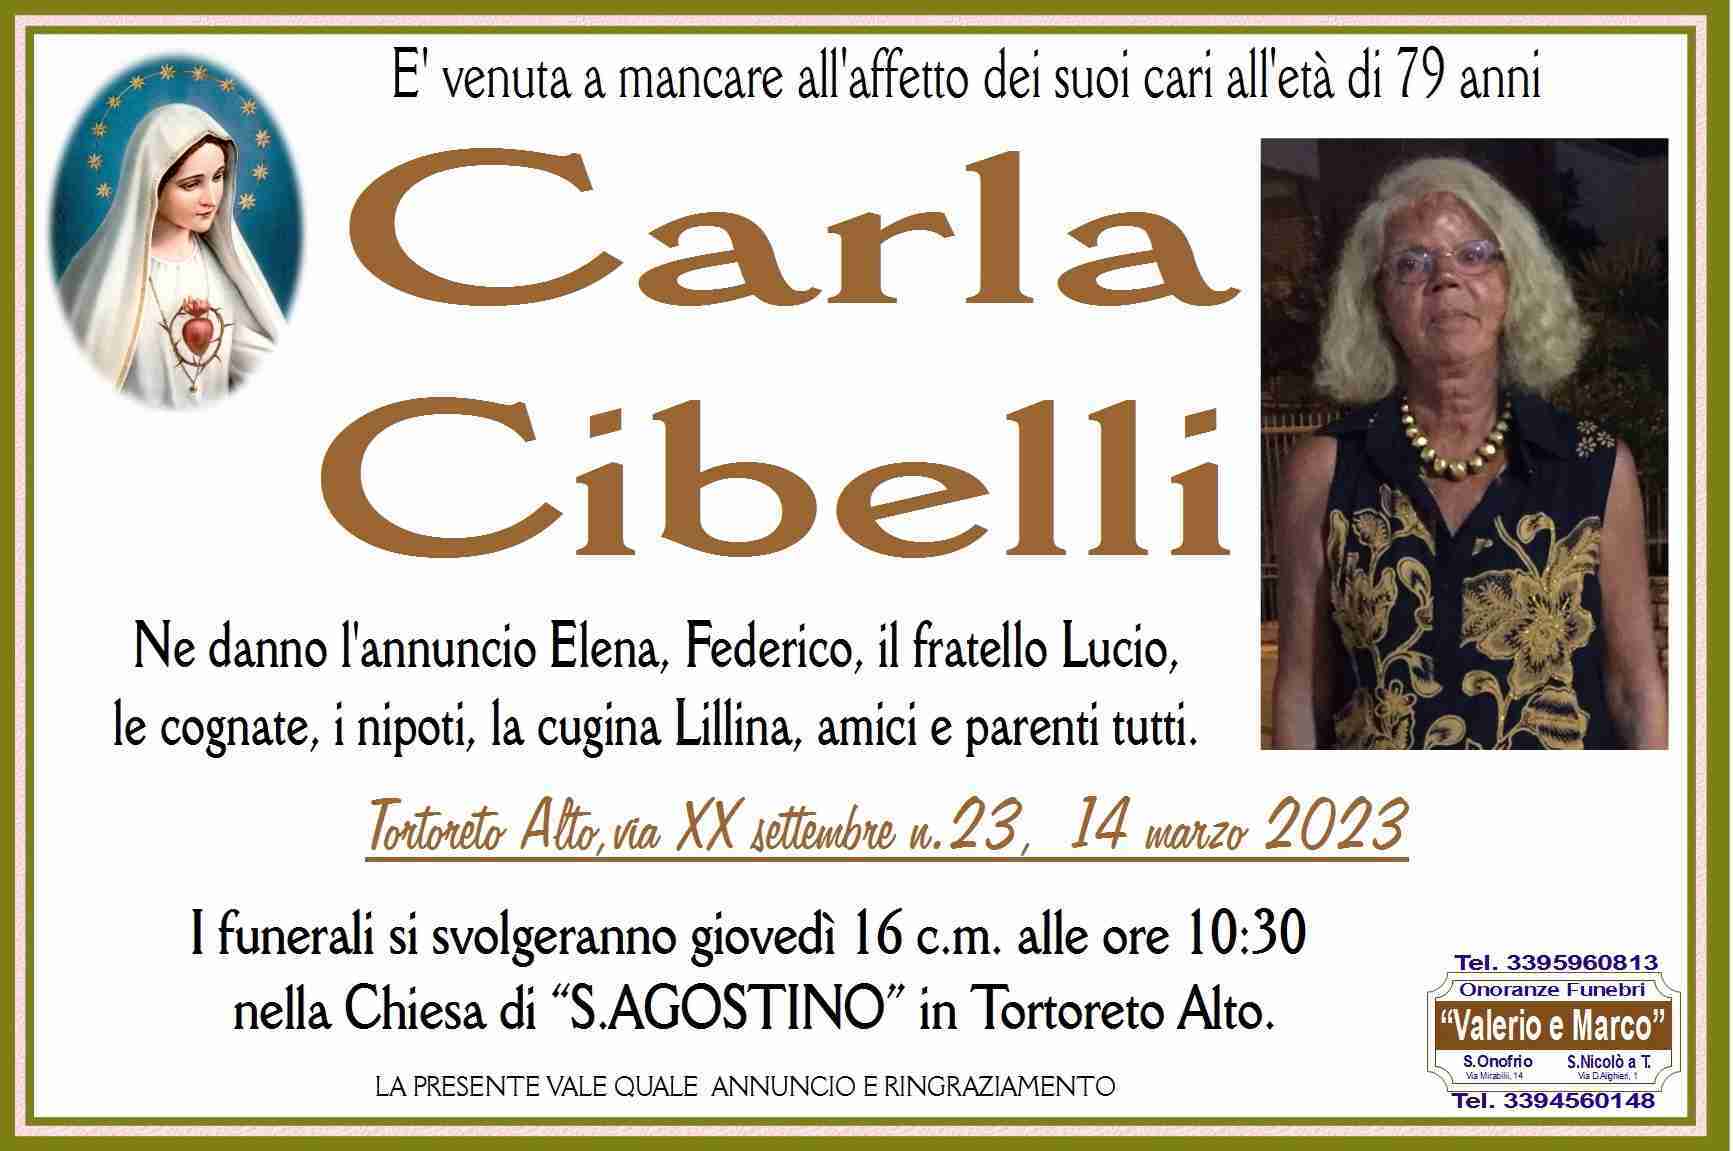 Carla Cibelli